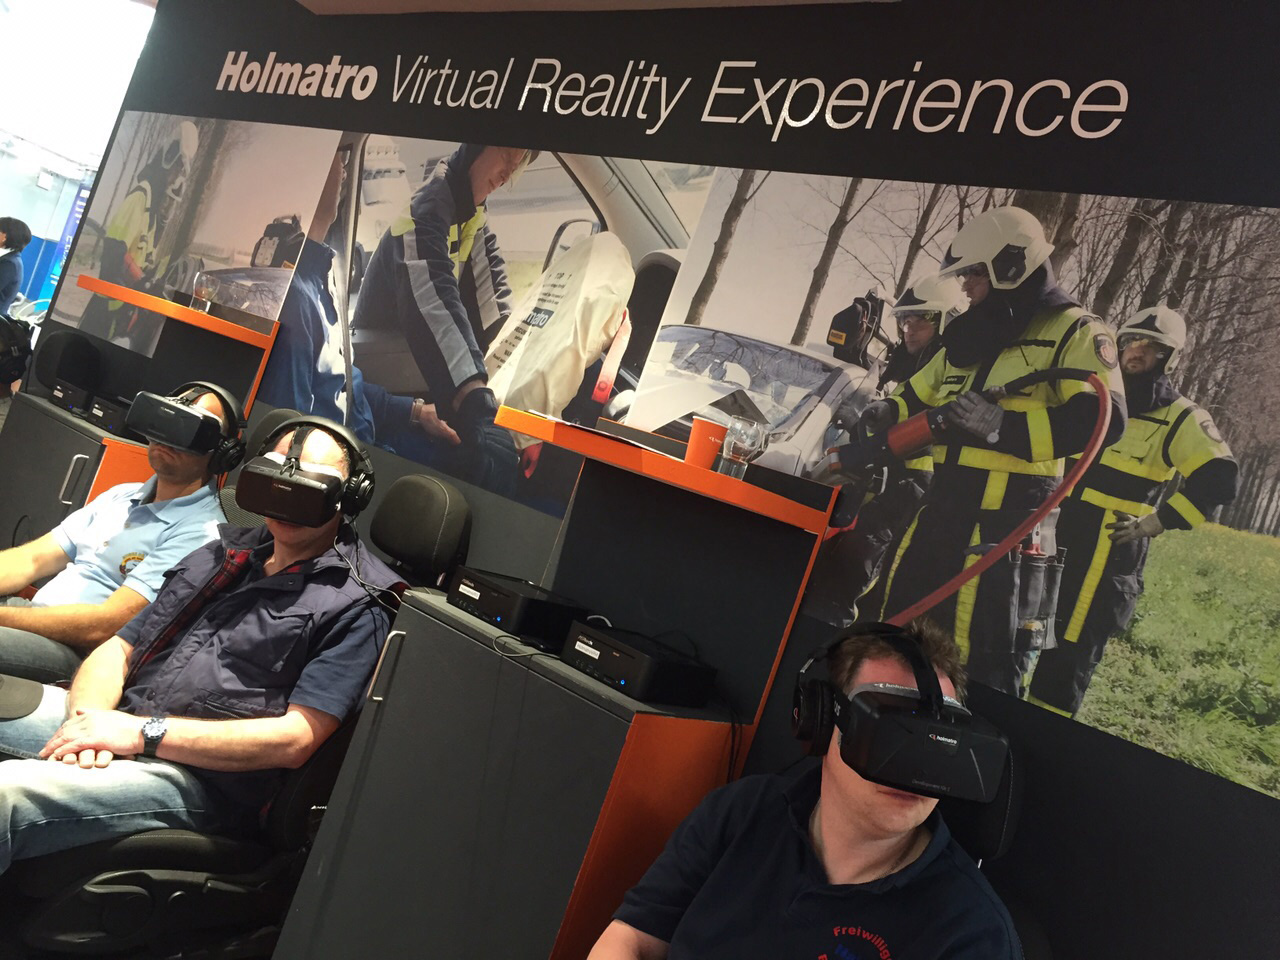 Holmatro Virtual Reality Experience